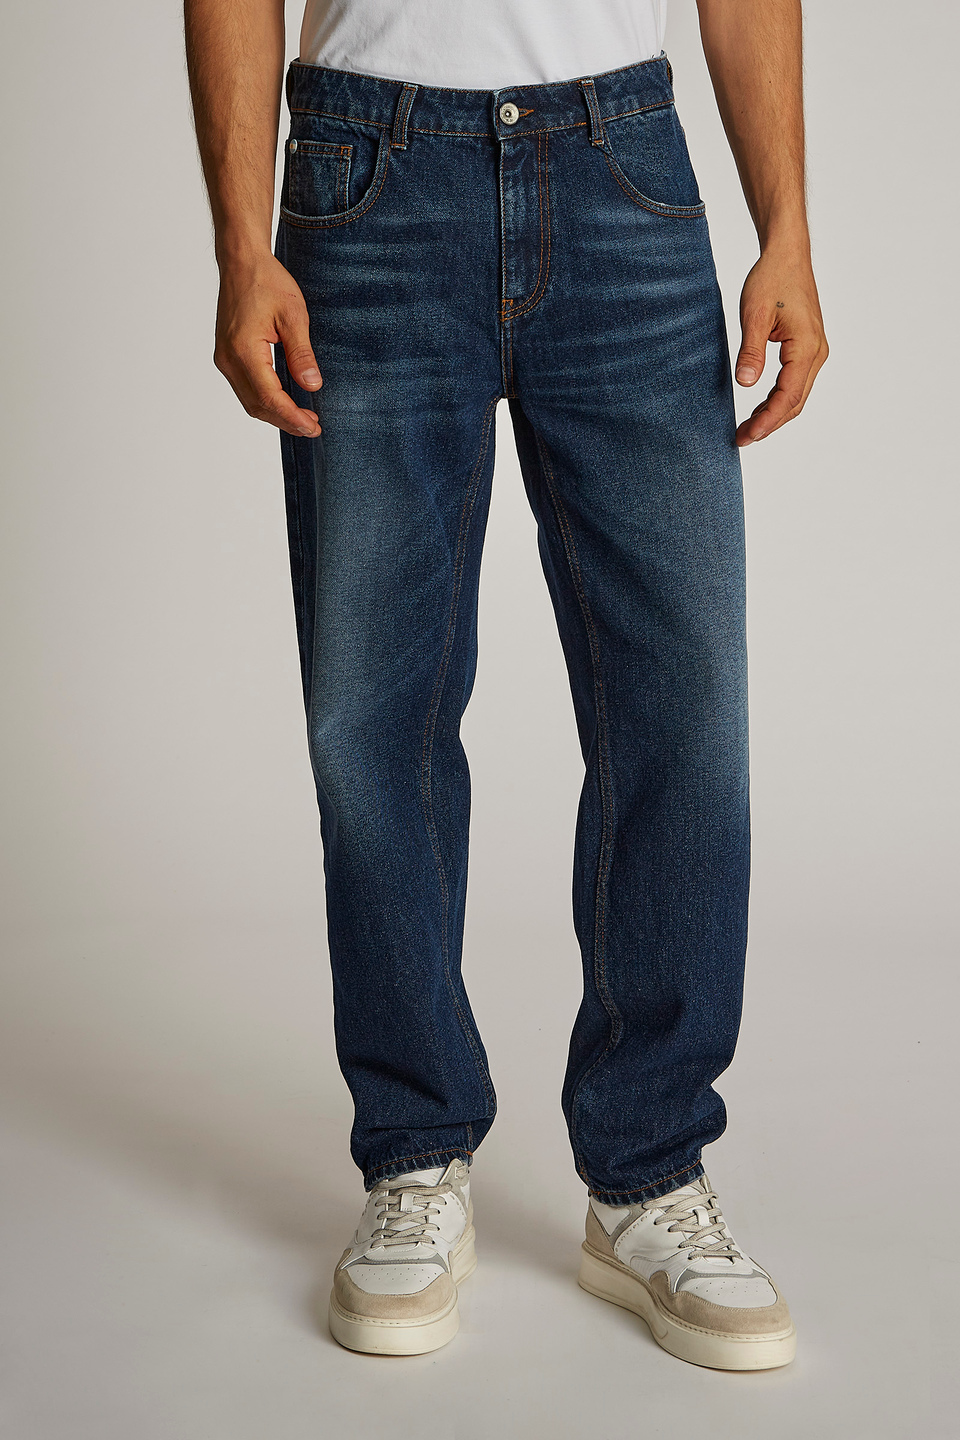 Men's regular-fit stretch cotton jeans - La Martina - Official Online Shop